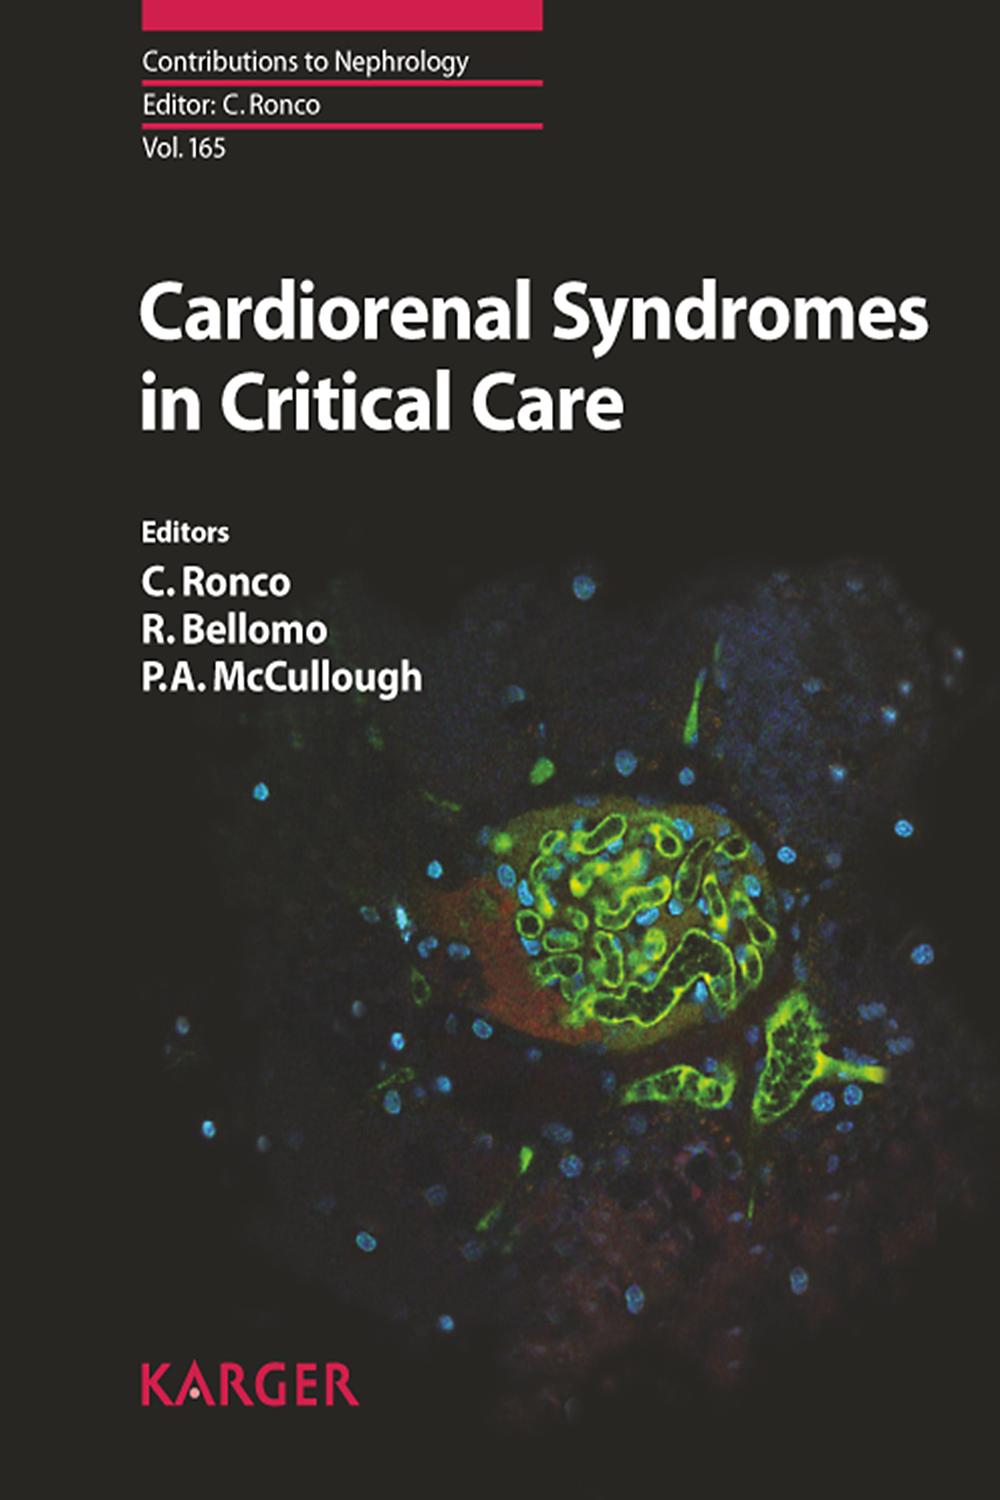 Cardiorenal Syndromes in Critical Care - C. Ronco, R. Bellomo, P. A. McCullough